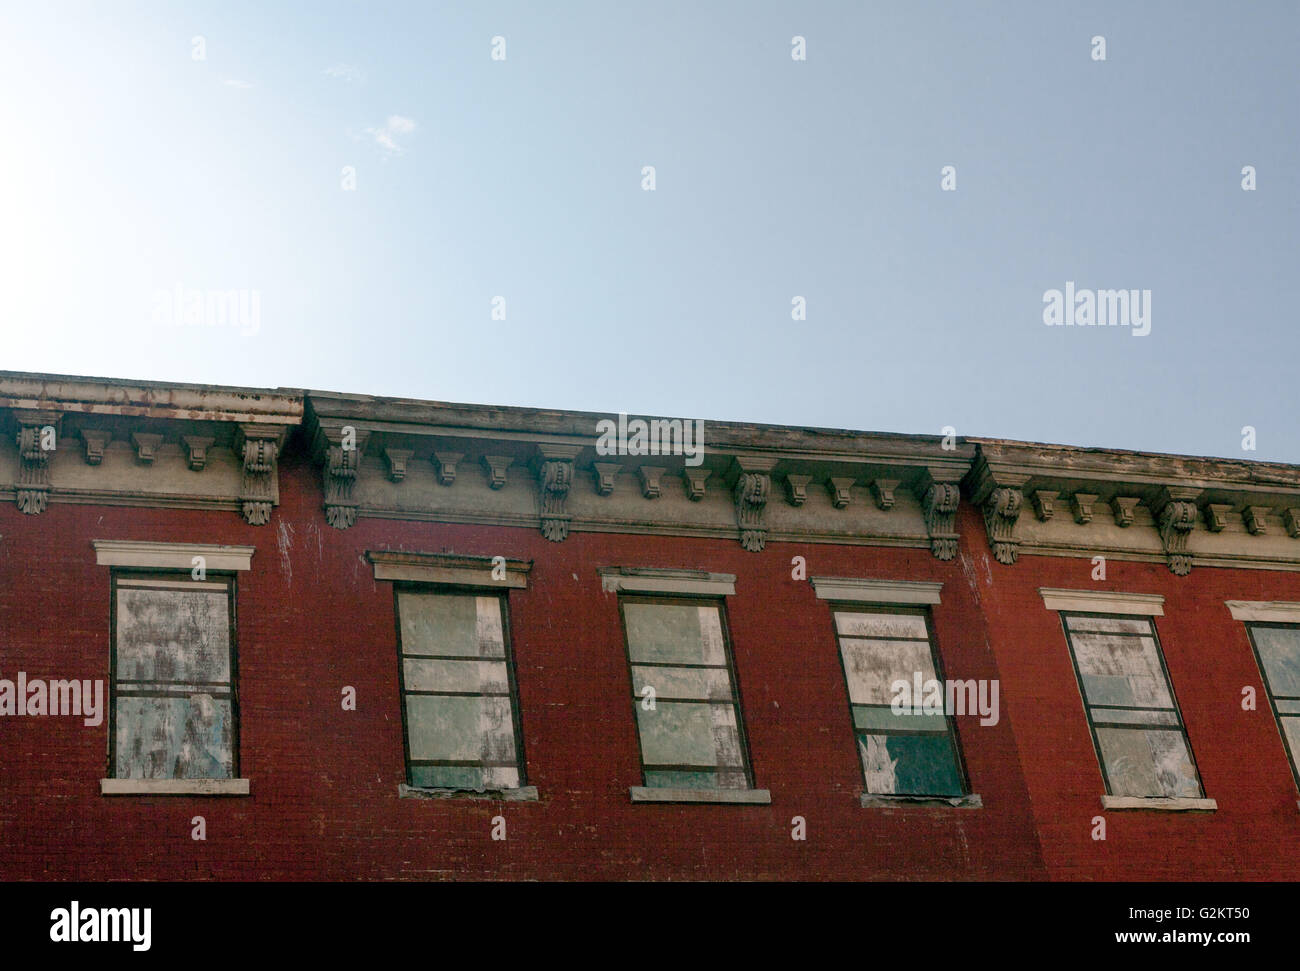 Fenêtres en trompe-l'œil, Williamsburg, Brooklyn, New York, USA Banque D'Images